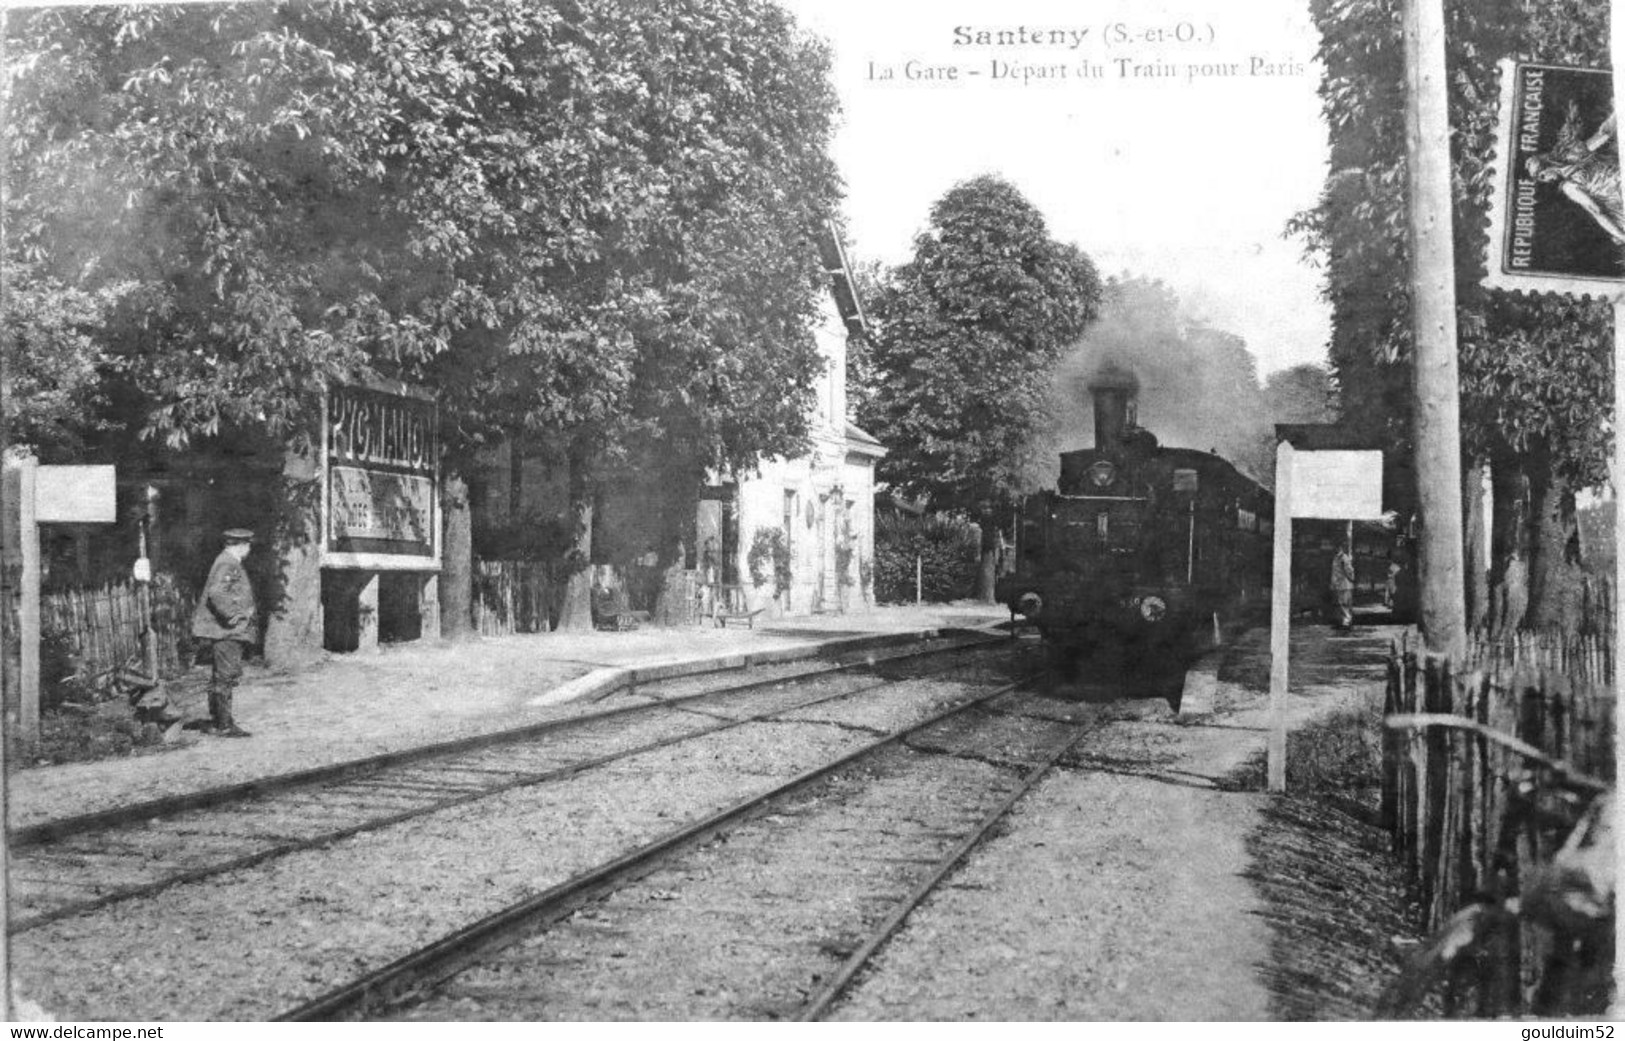 La Gare, Départ Du Train Pour Paris - Santeny